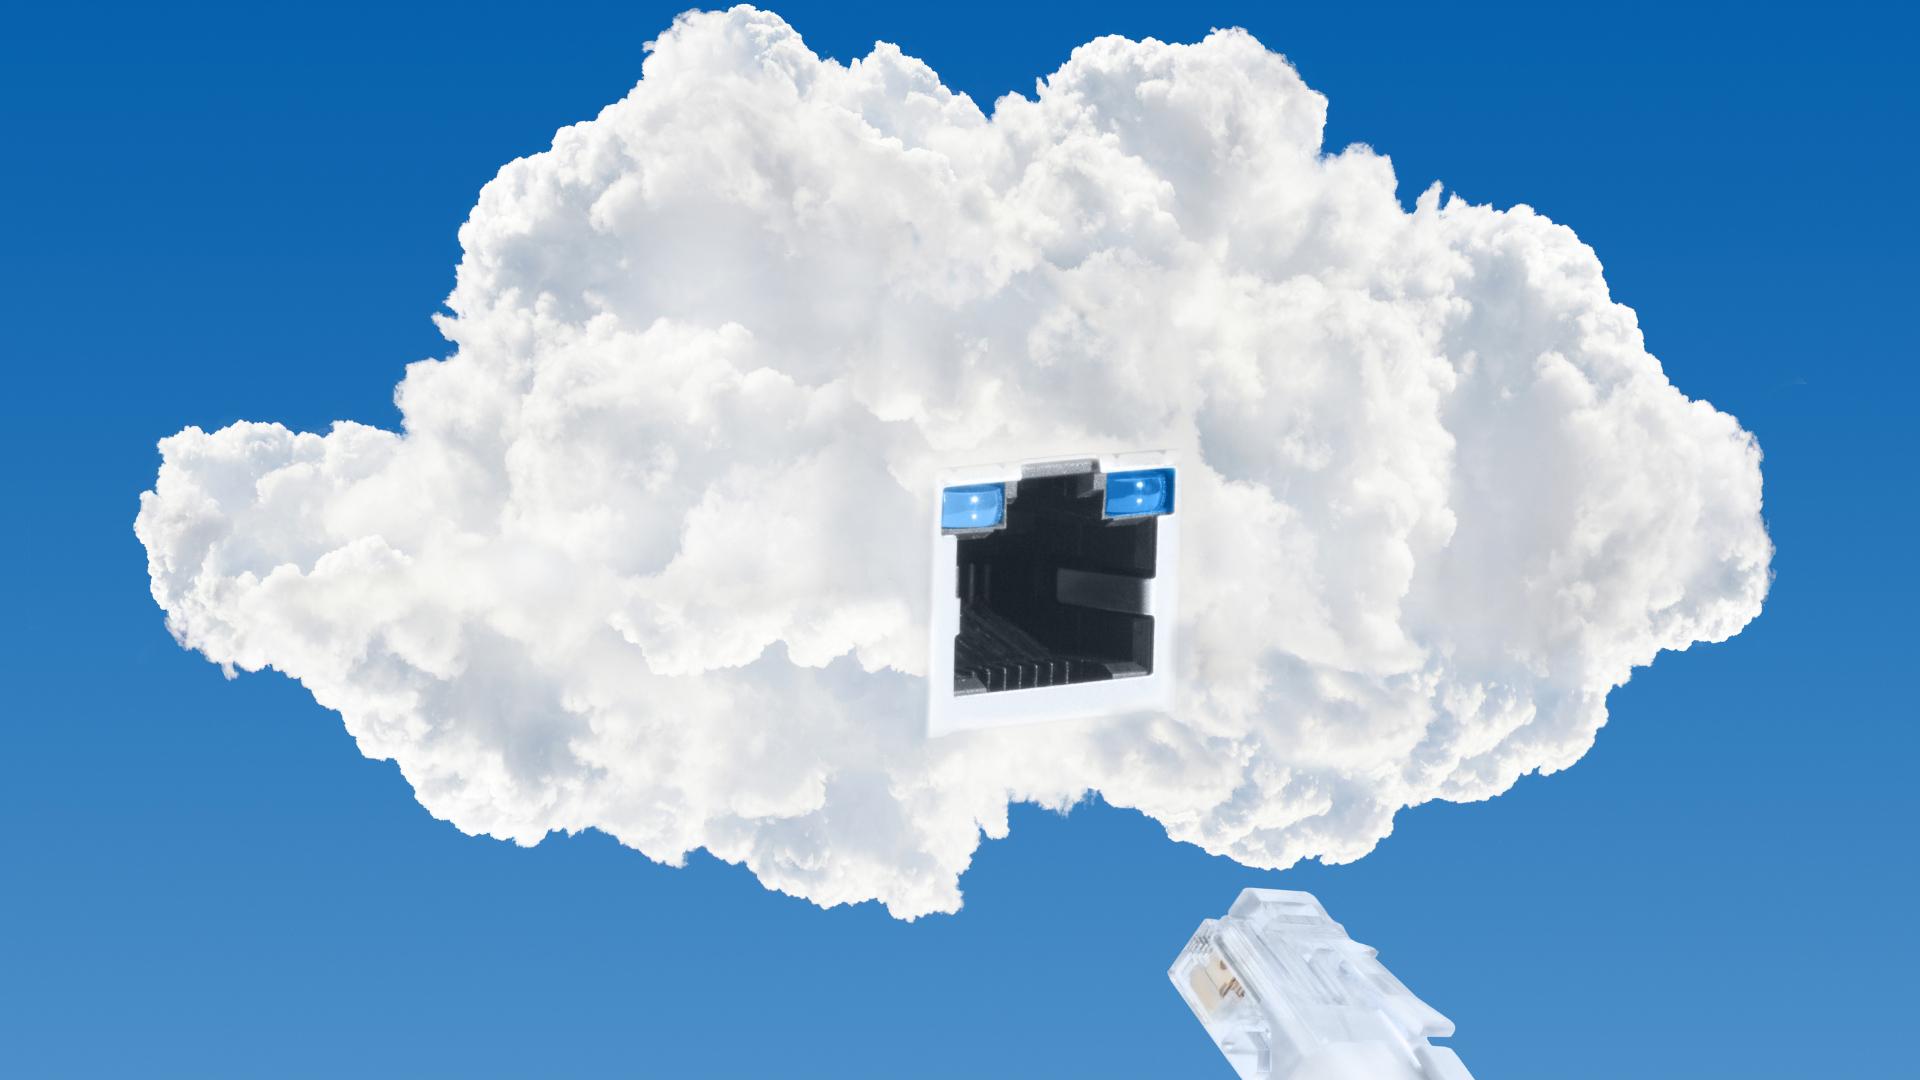 nuvem com plug ethernet para simbolizar software baseado em nuvem